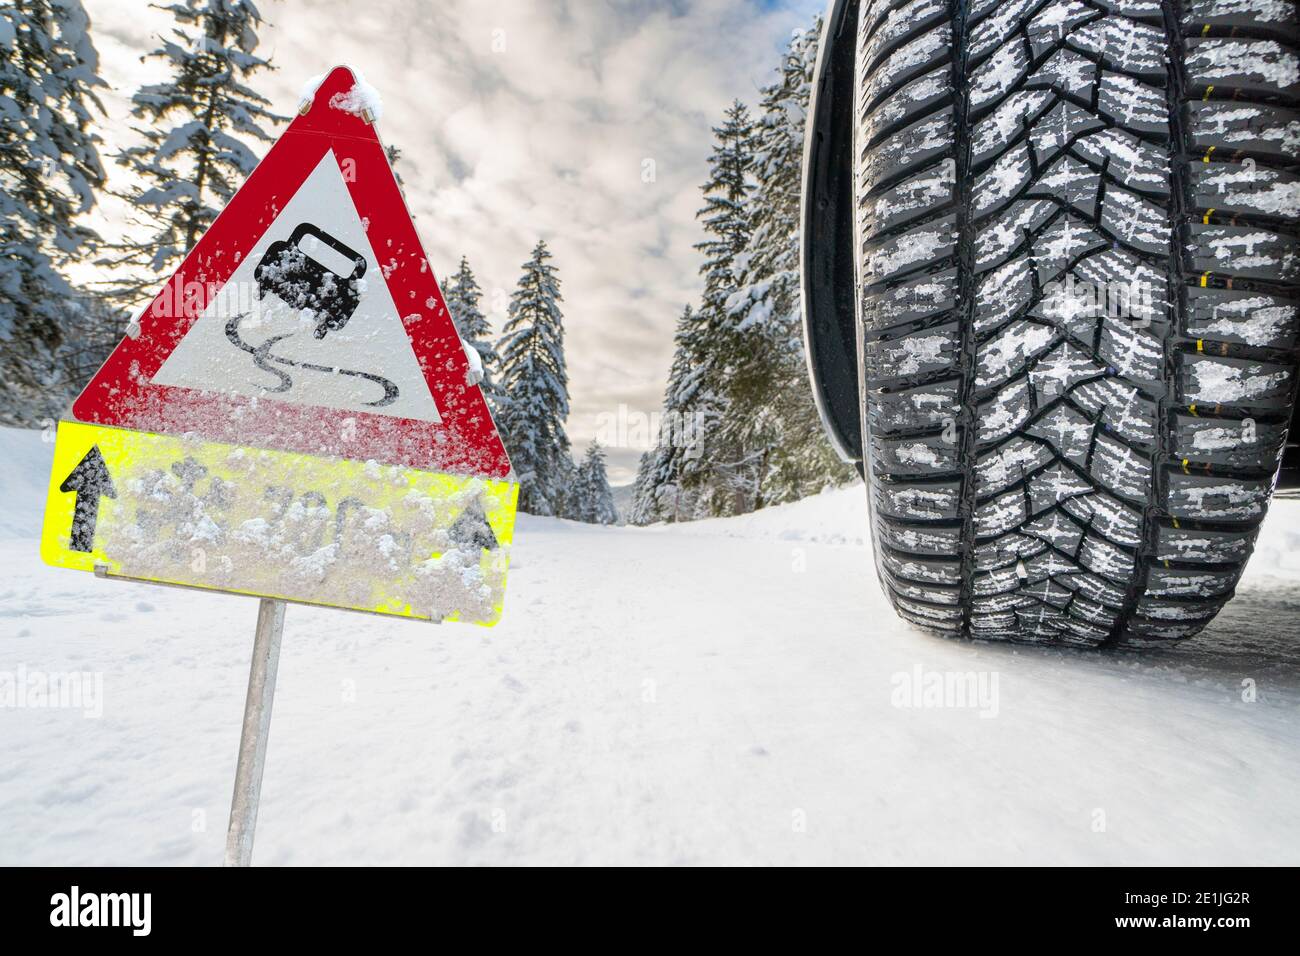 Winterreifen mit gutem Profil auf schneeglatter Straße und Warnschild Stock Photo